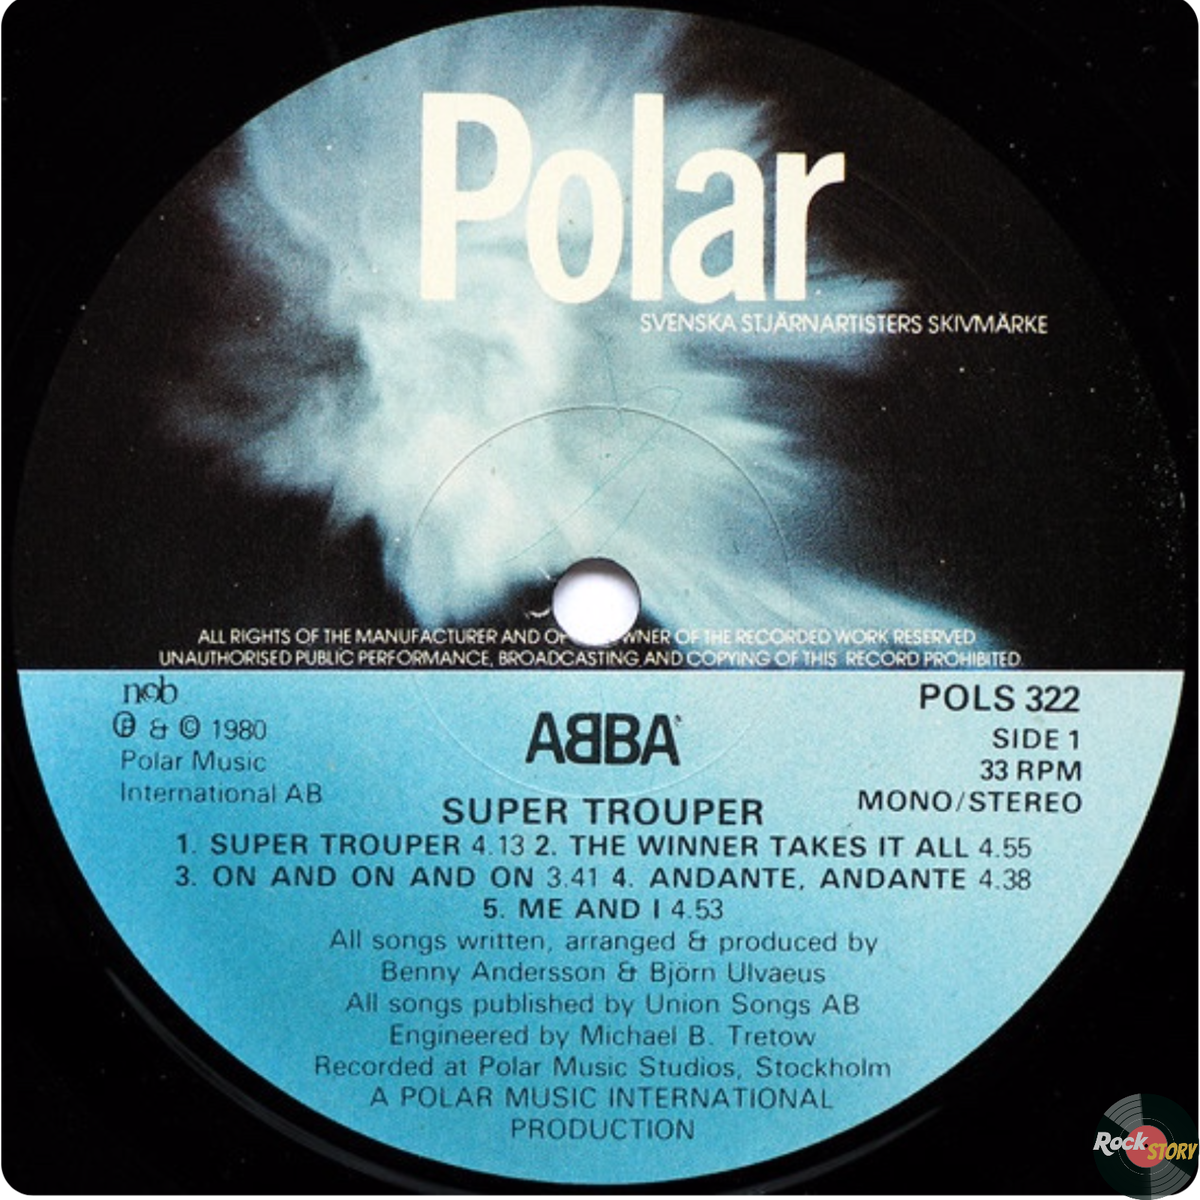 На фотографии: обложка альбома Super Trouper группы ABBA